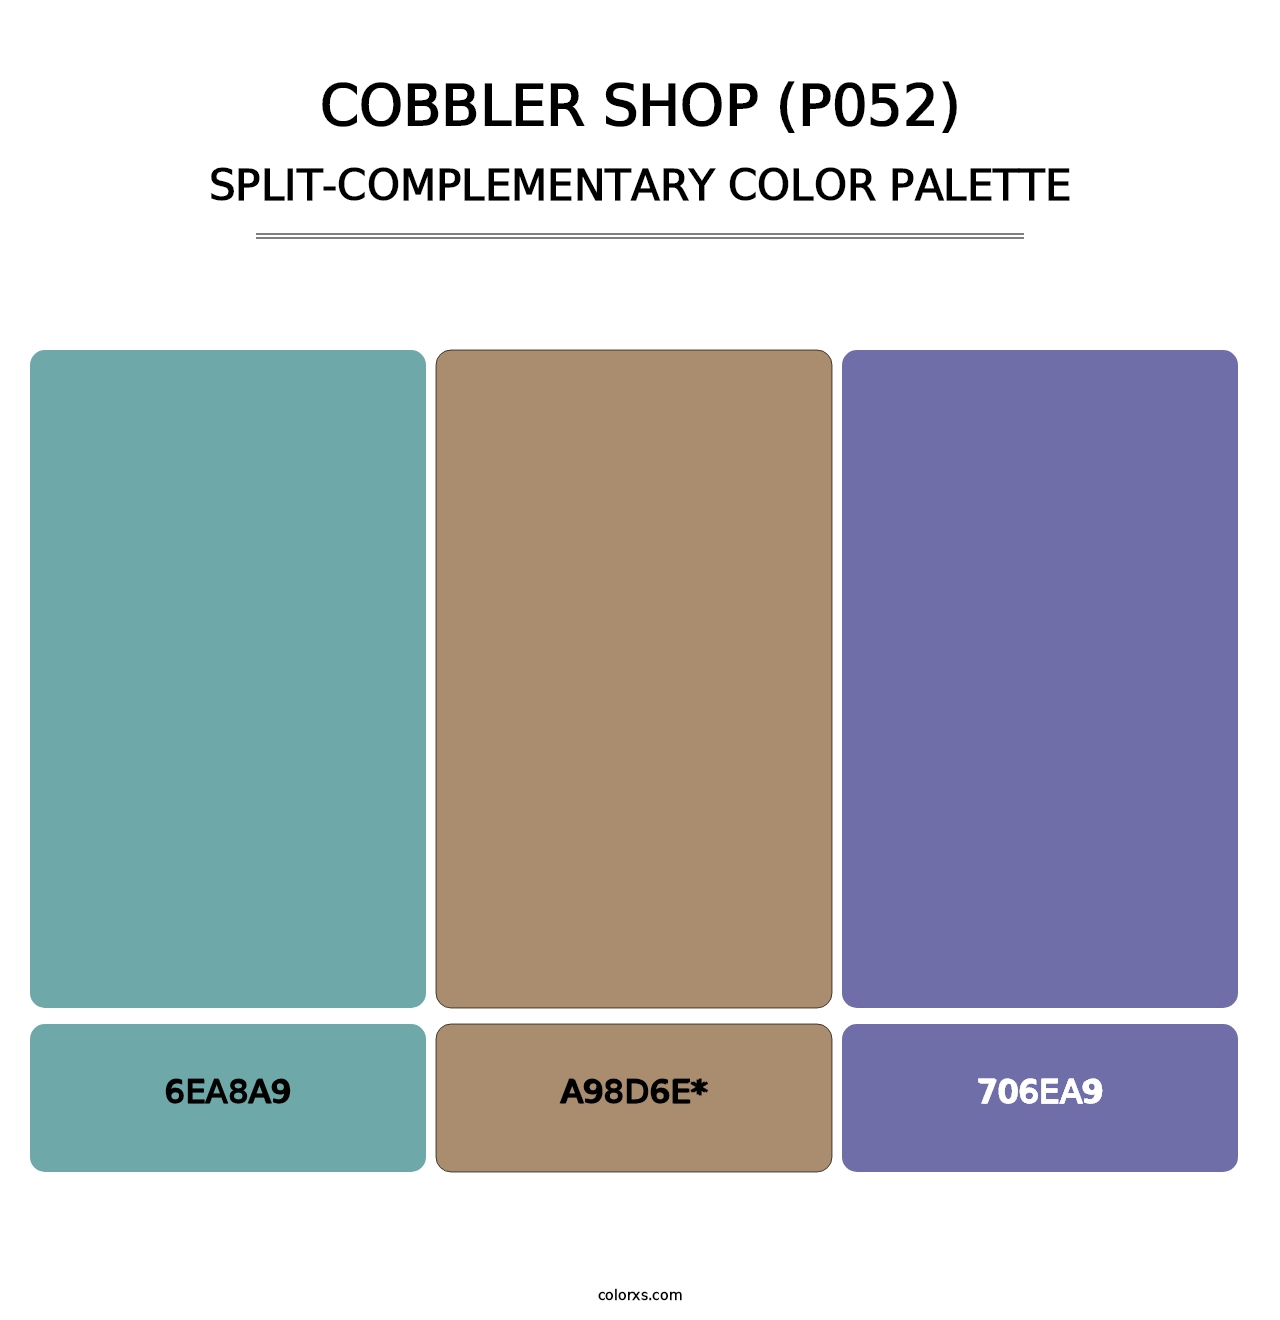 Cobbler Shop (P052) - Split-Complementary Color Palette